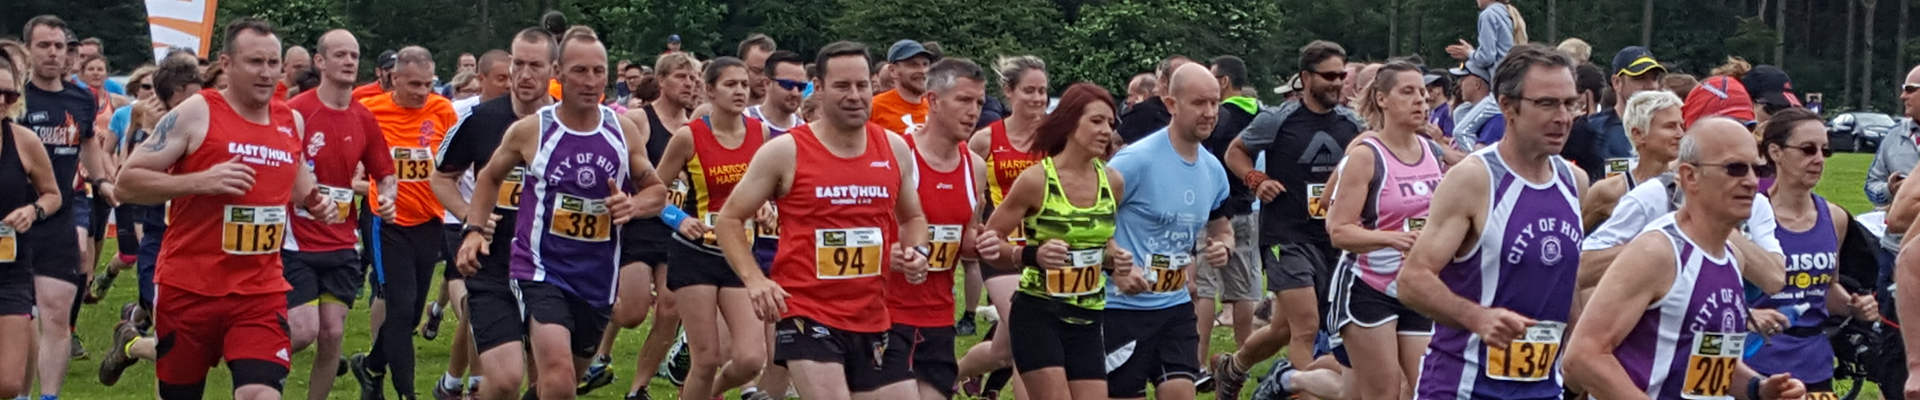 Dalby Conquer the Forest Half Marathon & 10k 2018